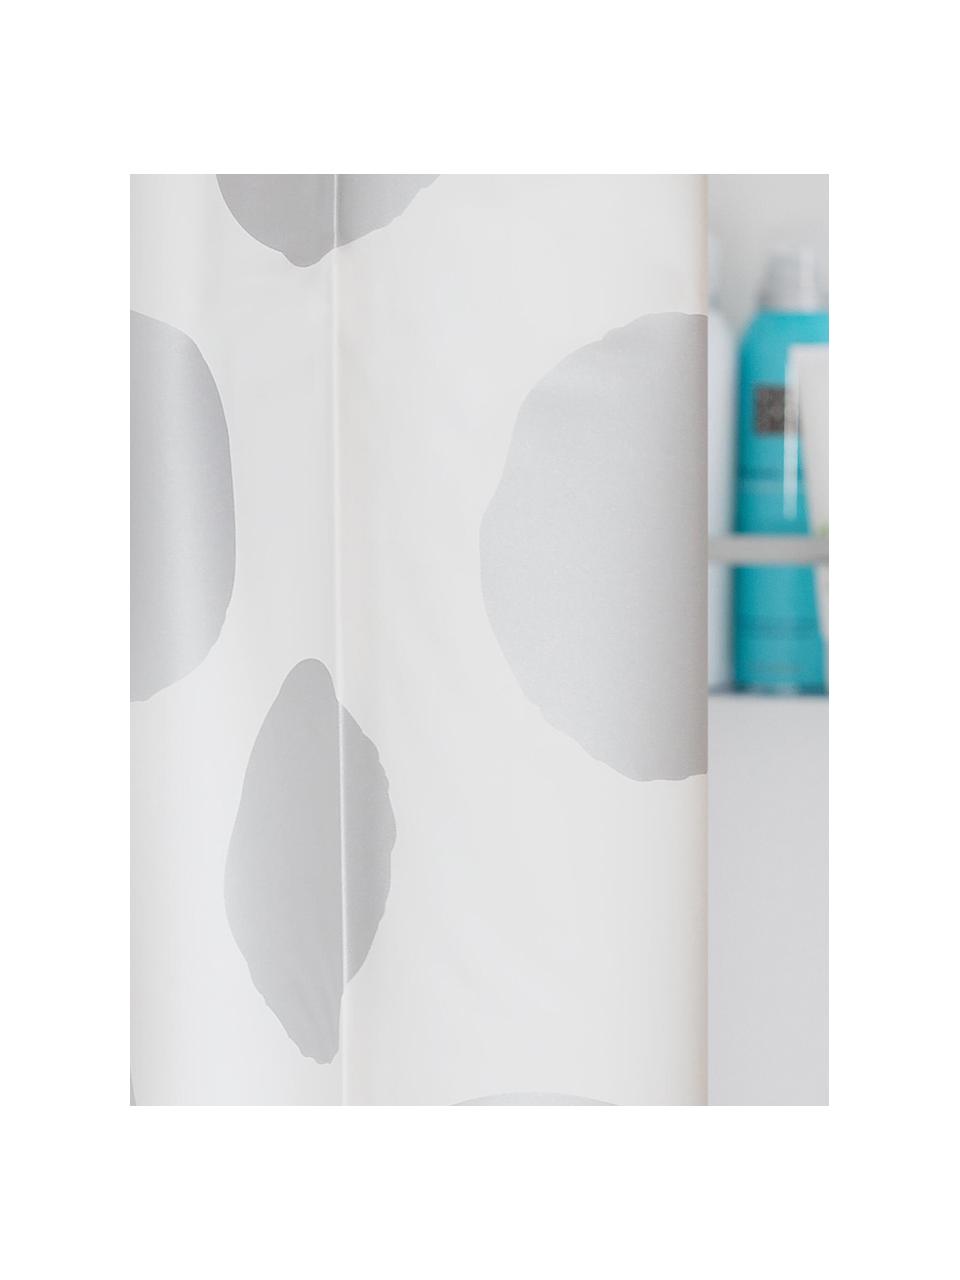 Zasłona prysznicowa Spots, Tworzywo sztuczne (PEVA), produkt wodoodporny, Biały, odcienie srebrnego, S 180 x D 200 cm